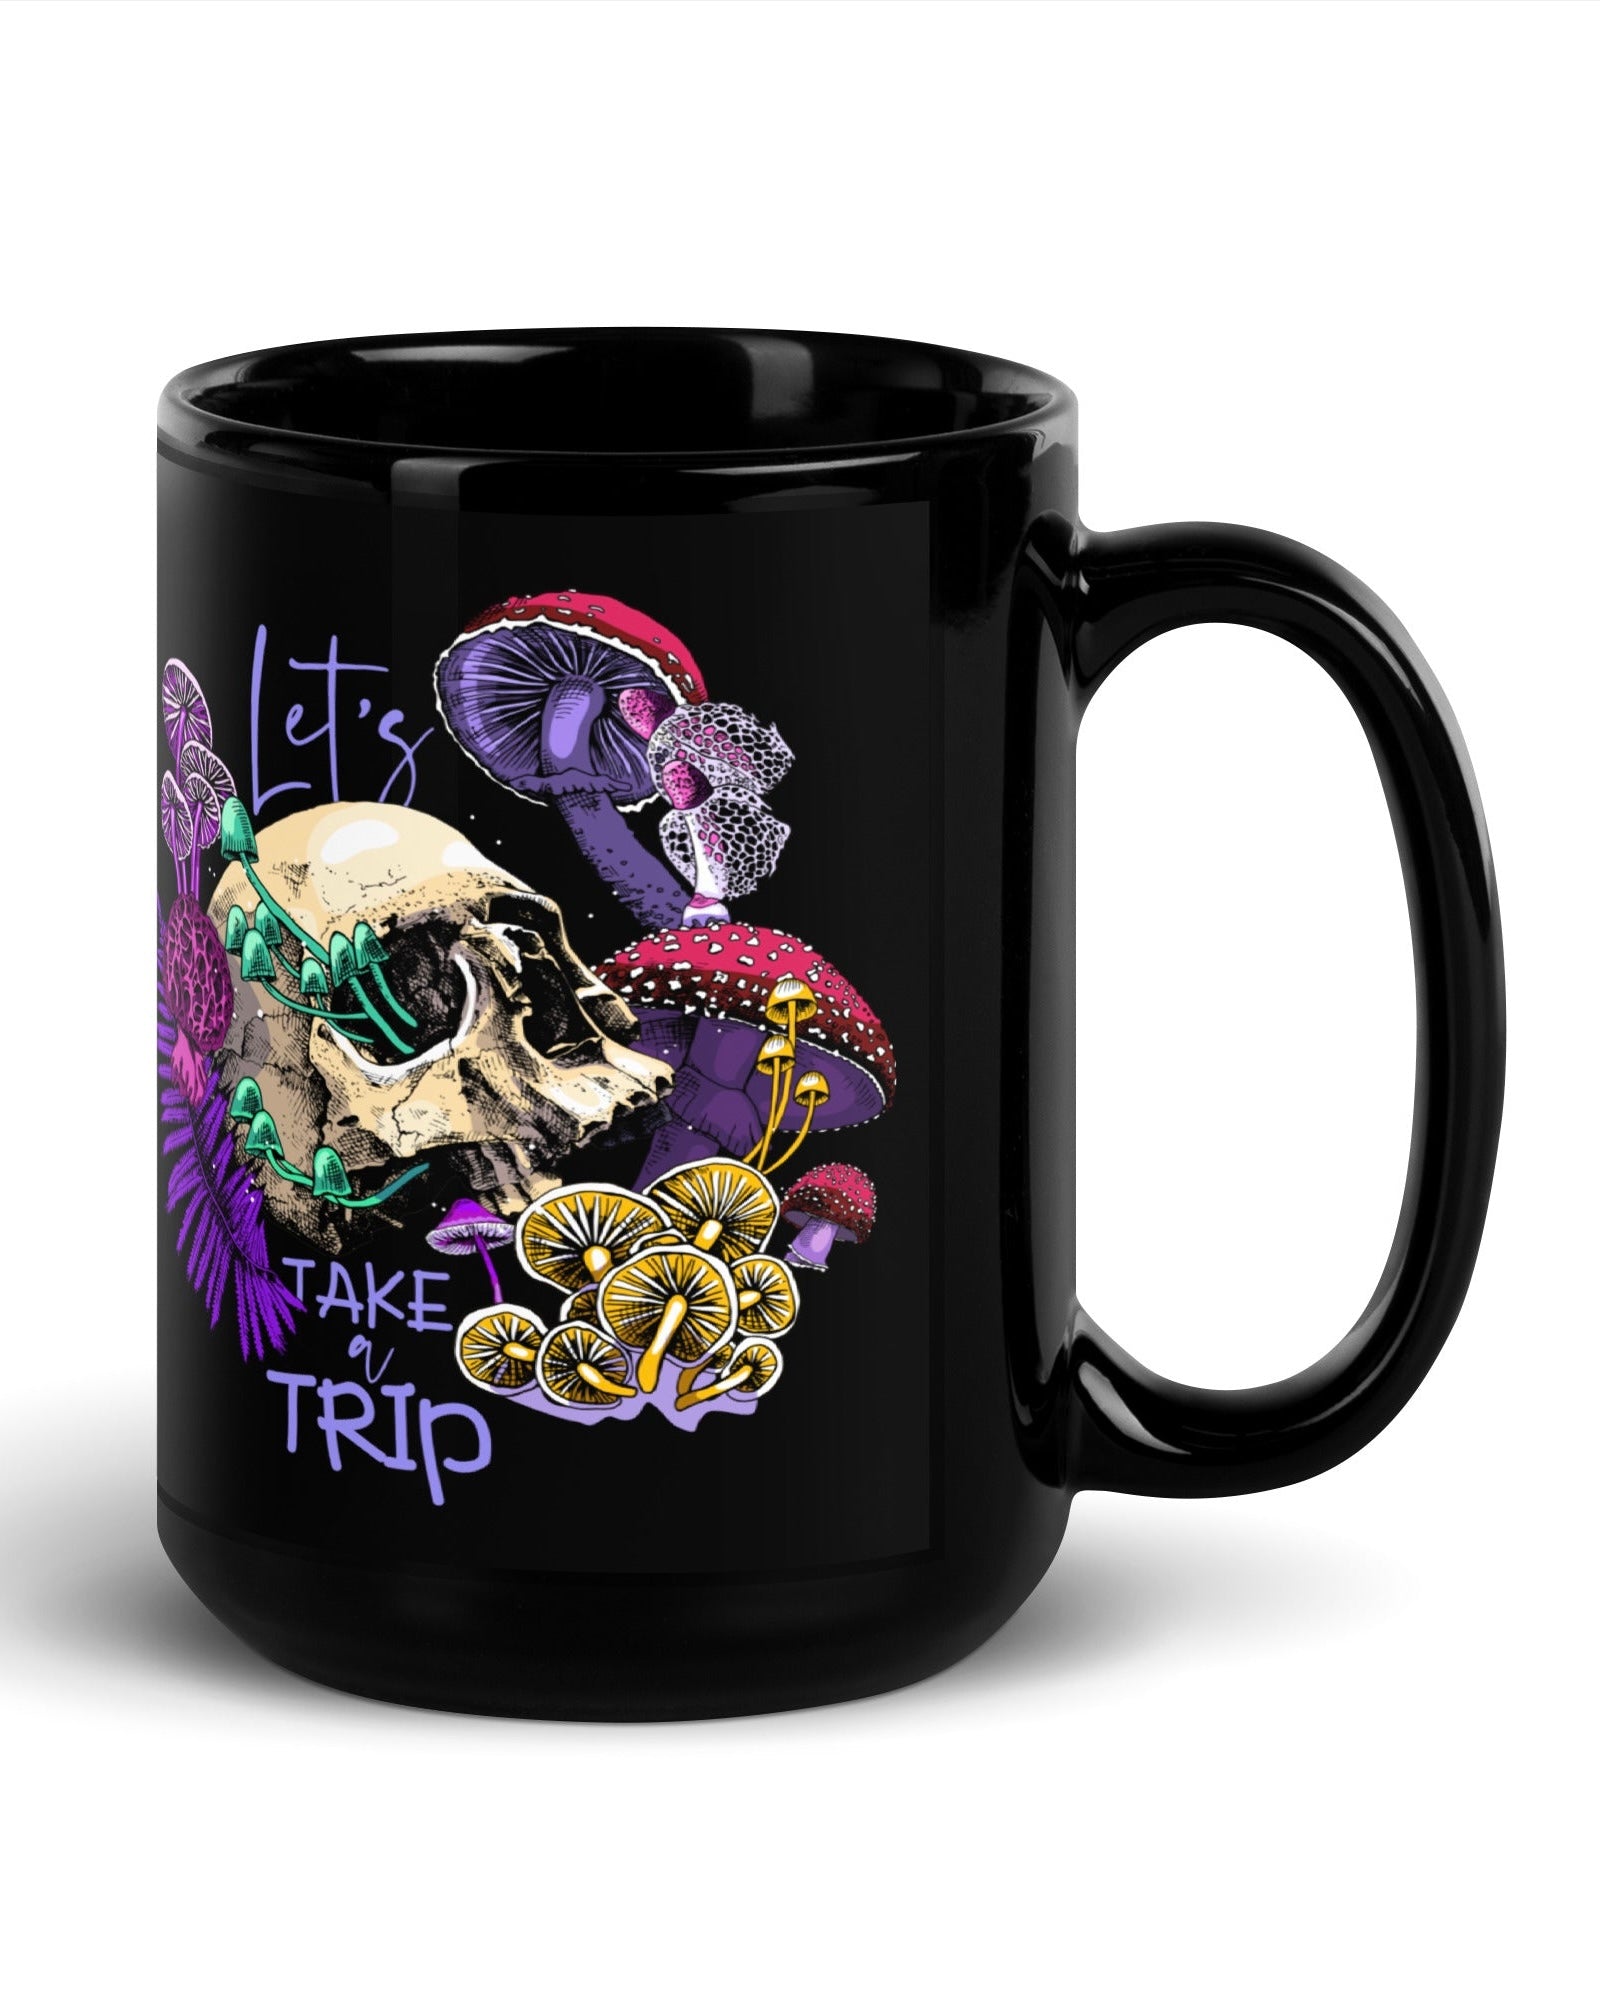 Let's Take A Trip Mug